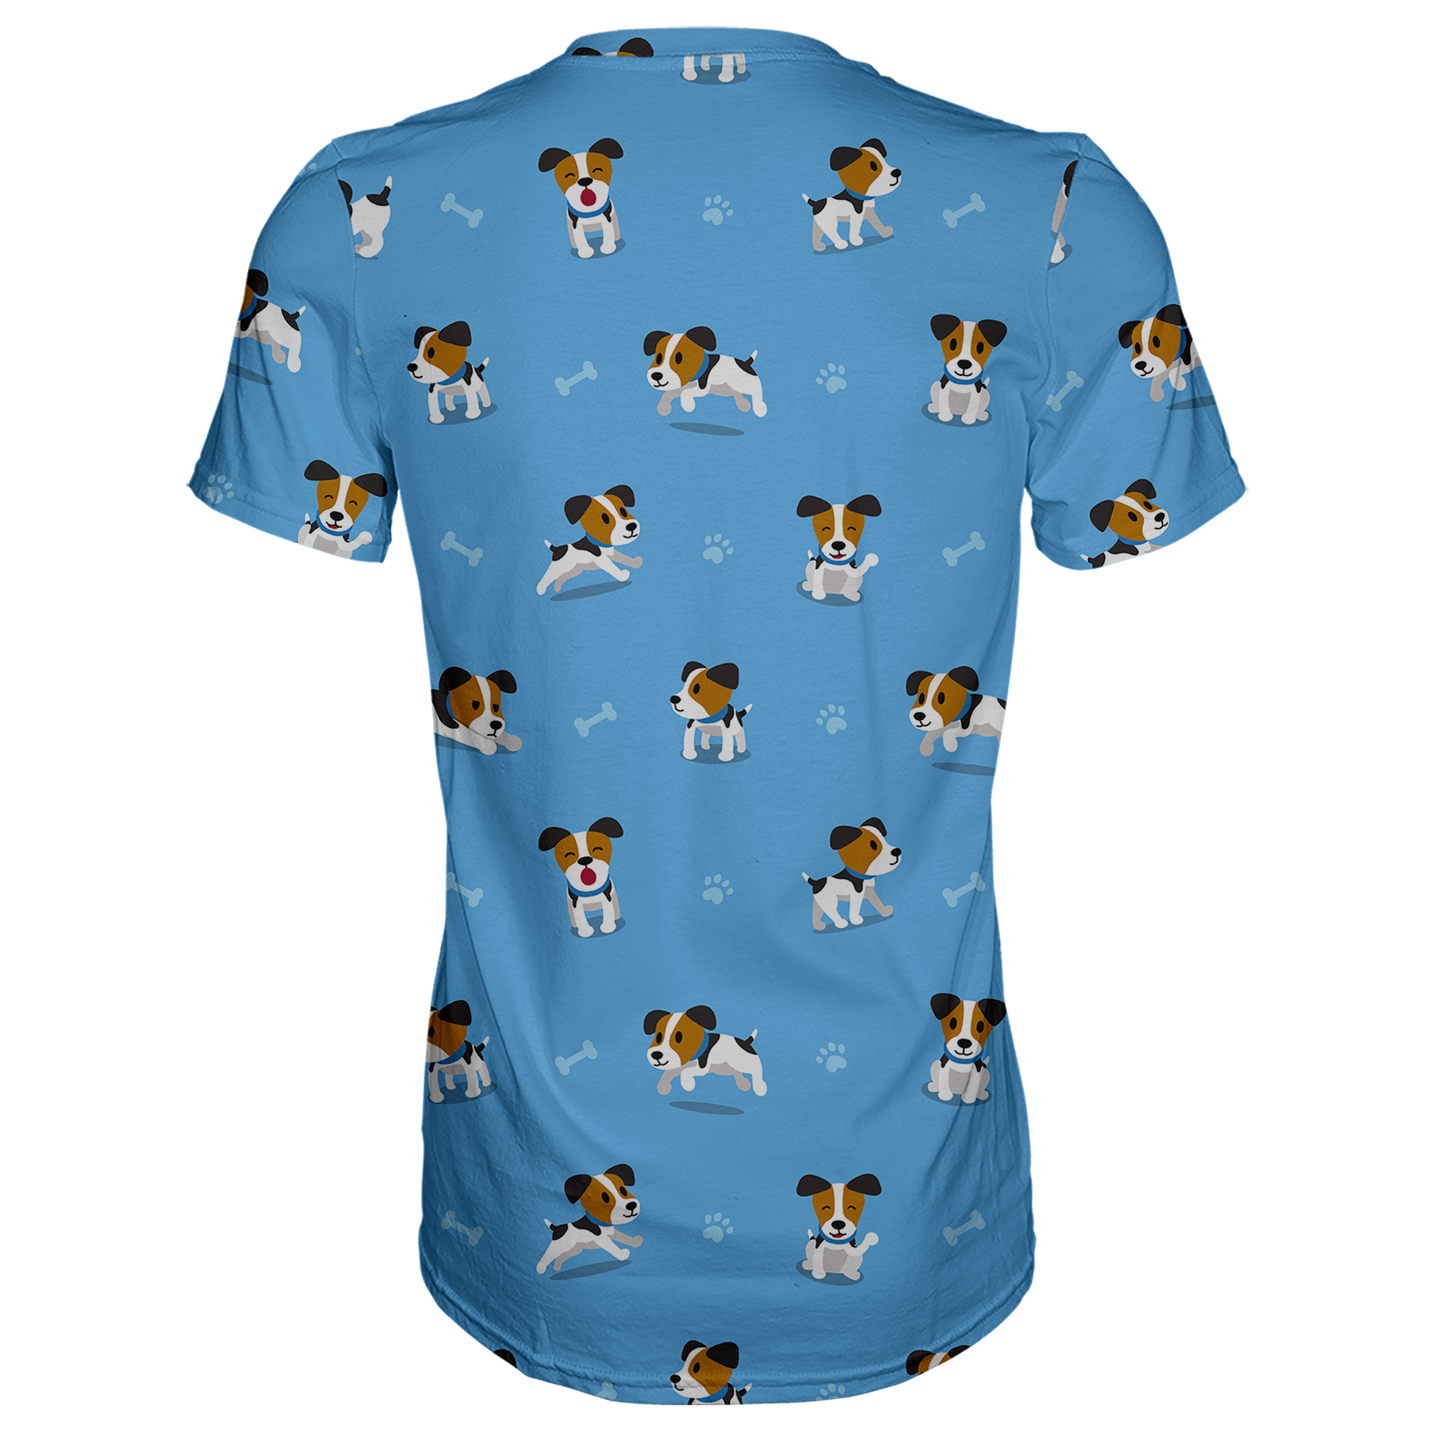 Jack Russell Terrier T-Shirt